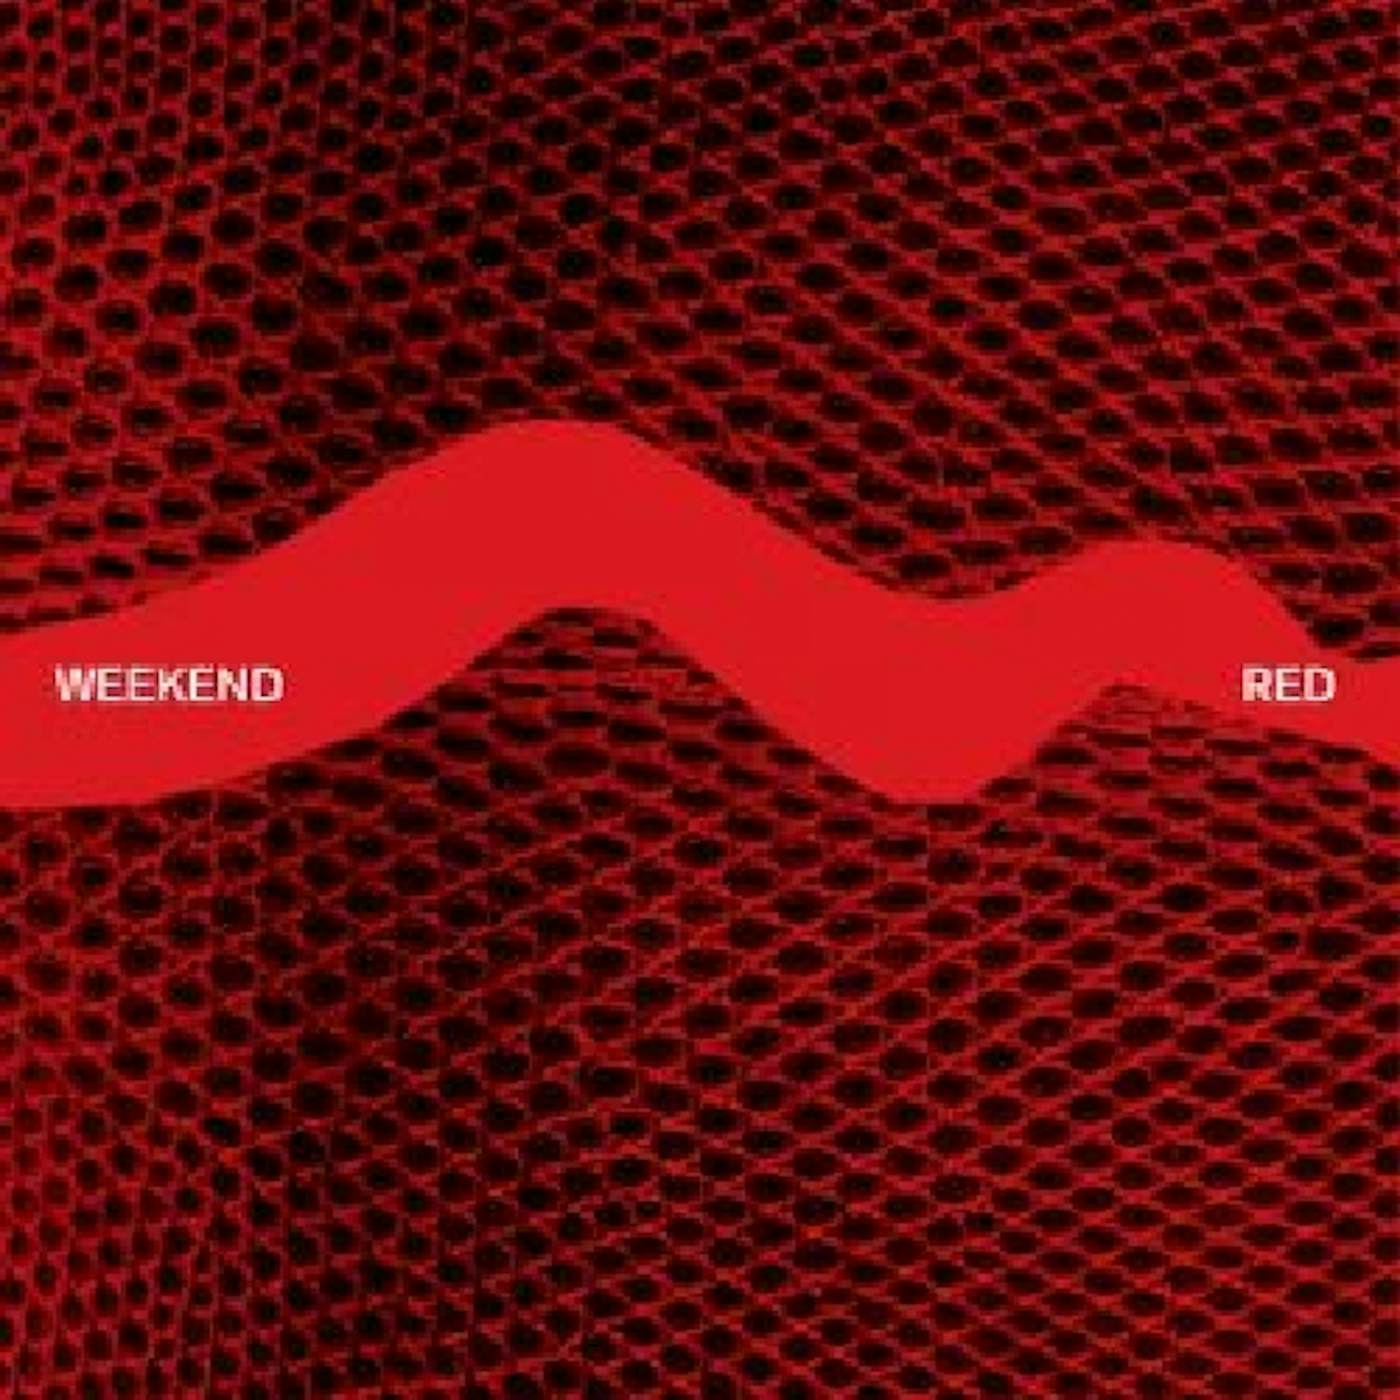 Weekend Red Vinyl Record